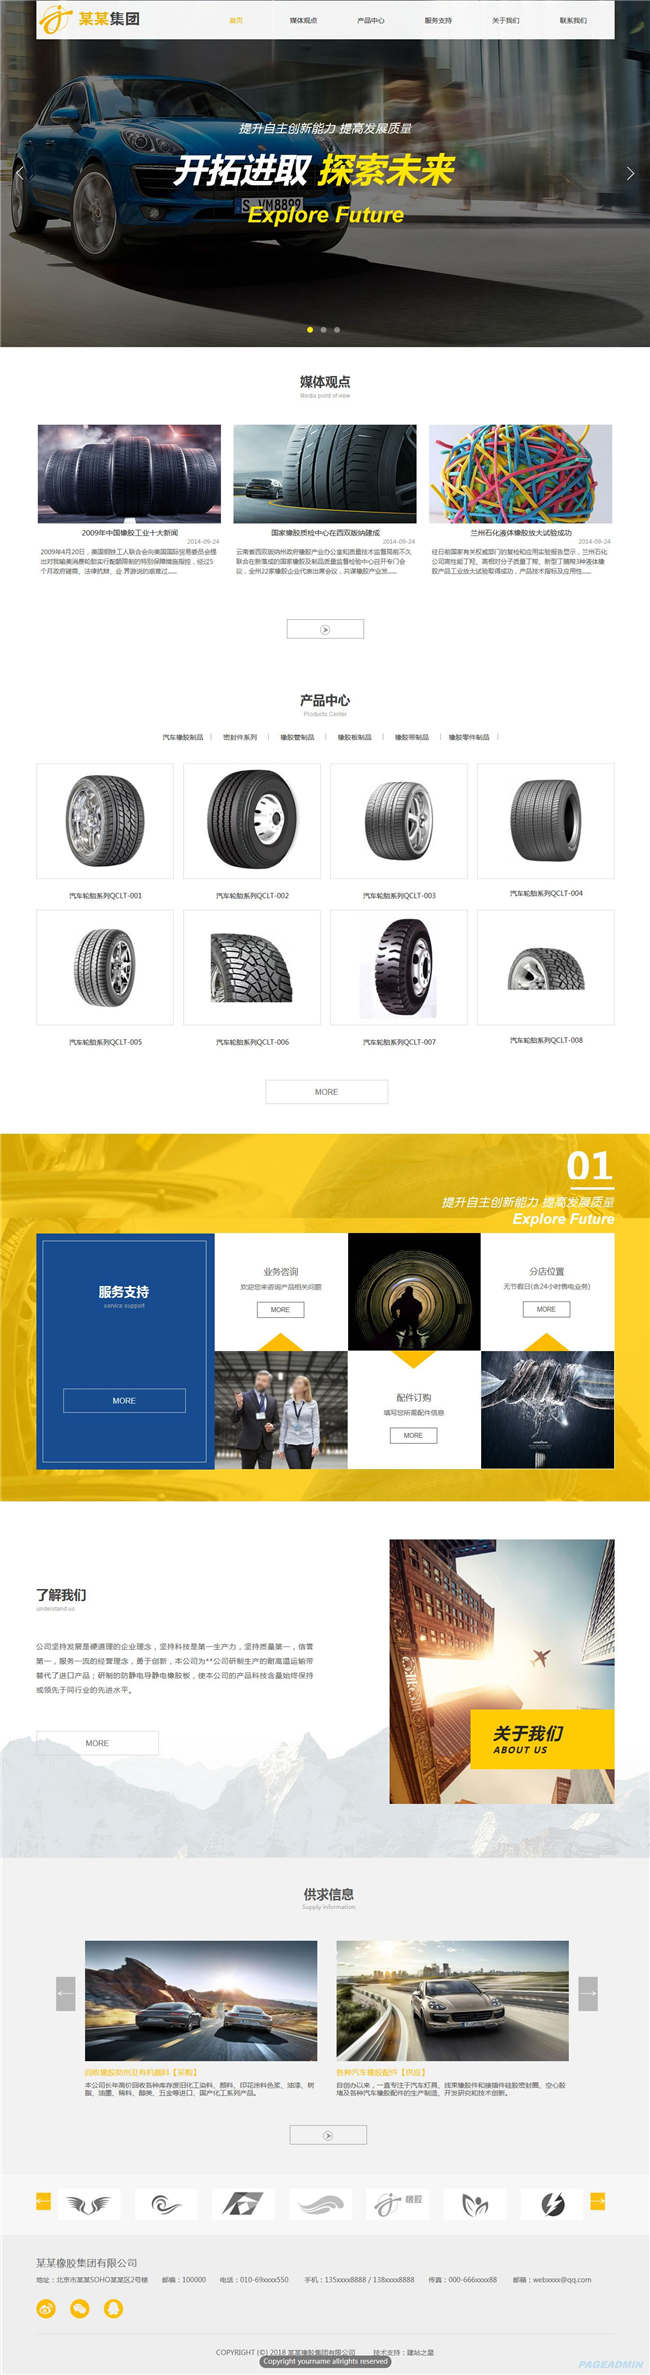 橡胶制品汽车汽配服务建材冶金塑料轮胎网站Wordpress模板(带手机站)预览图